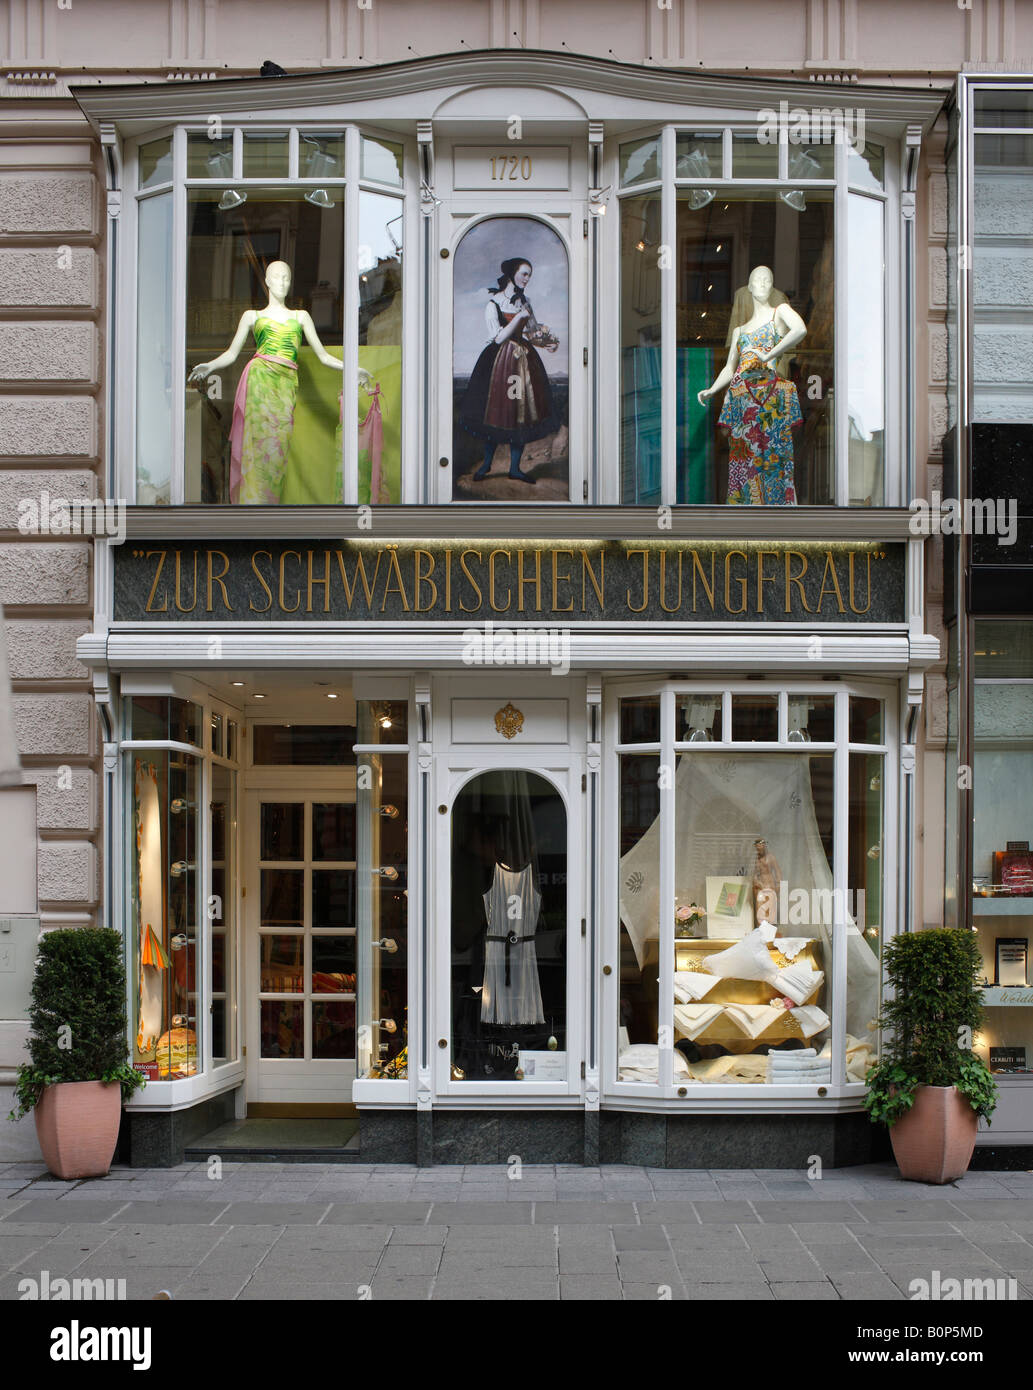 Wien, Graben, Geschäft  'Zur Schwäbischen Jungfrau', Schaufenster Stock Photo